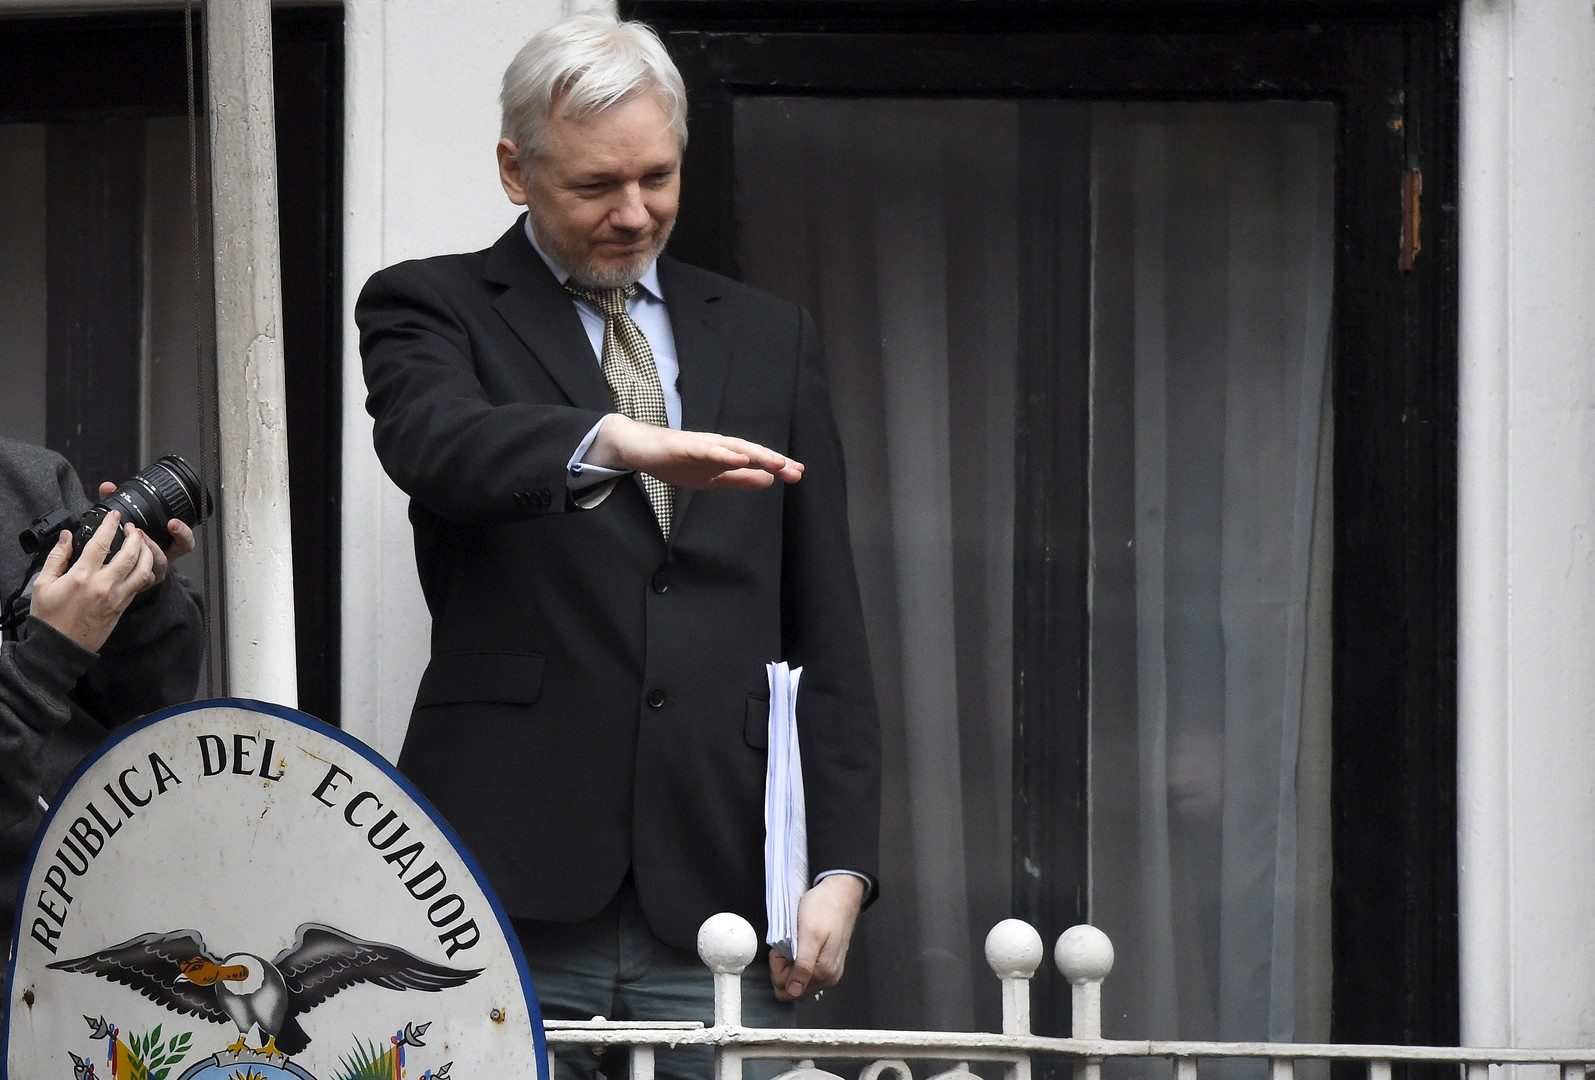   مؤسس «ويكيليس» يعتزم البقاء داخل سفارة الإكوادور بلندن تفاديا لتسليمه للولايات المتحدة